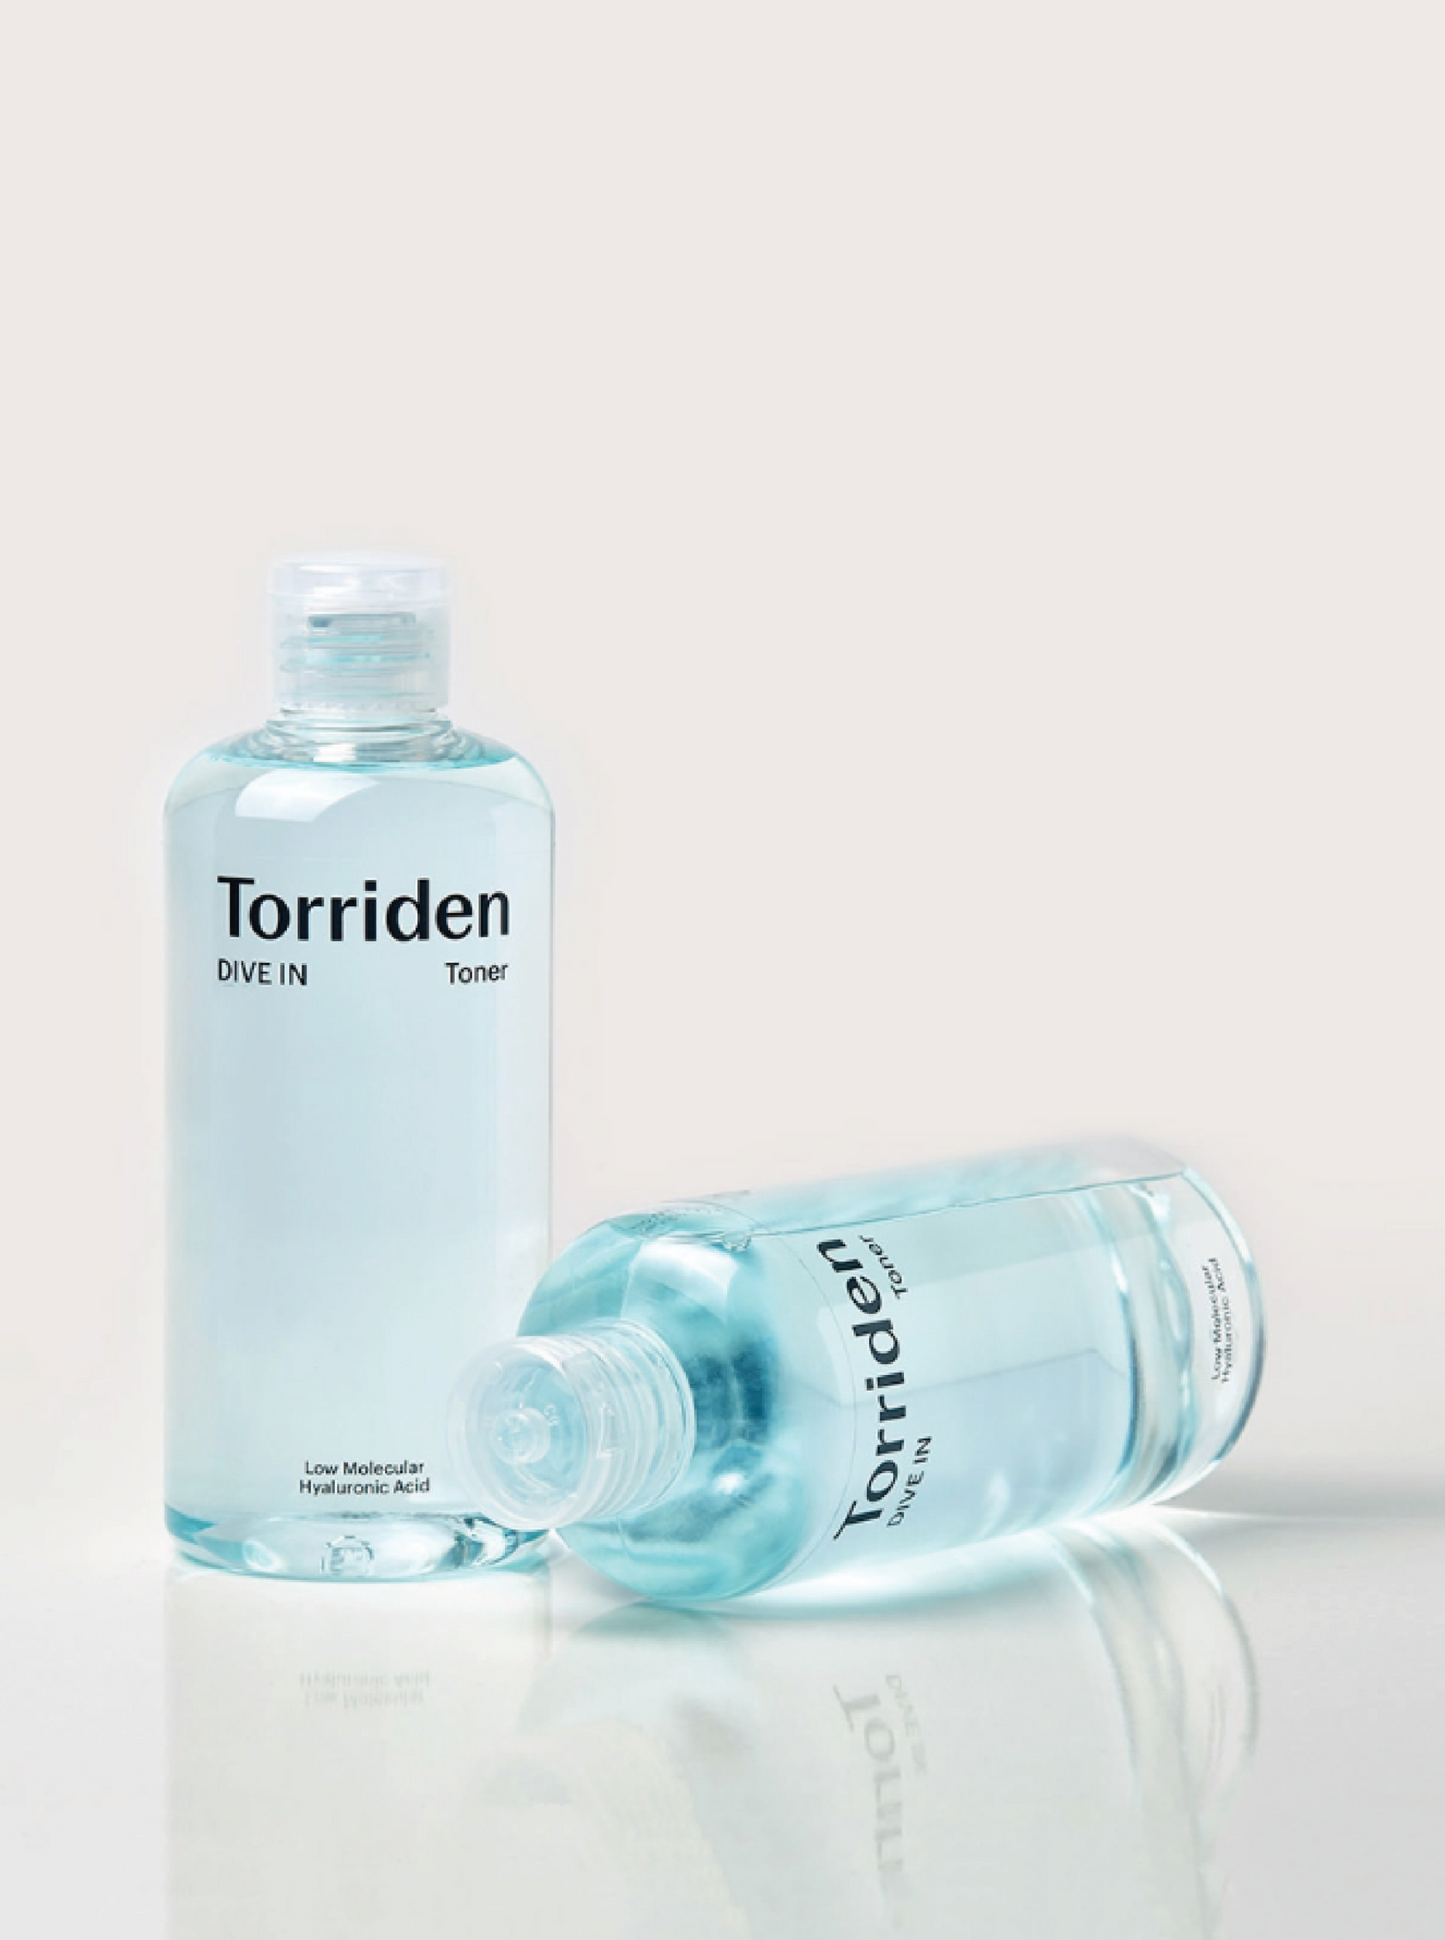 Torriden Dive-ln Toner / Tonique a L'acide Hyaluronique